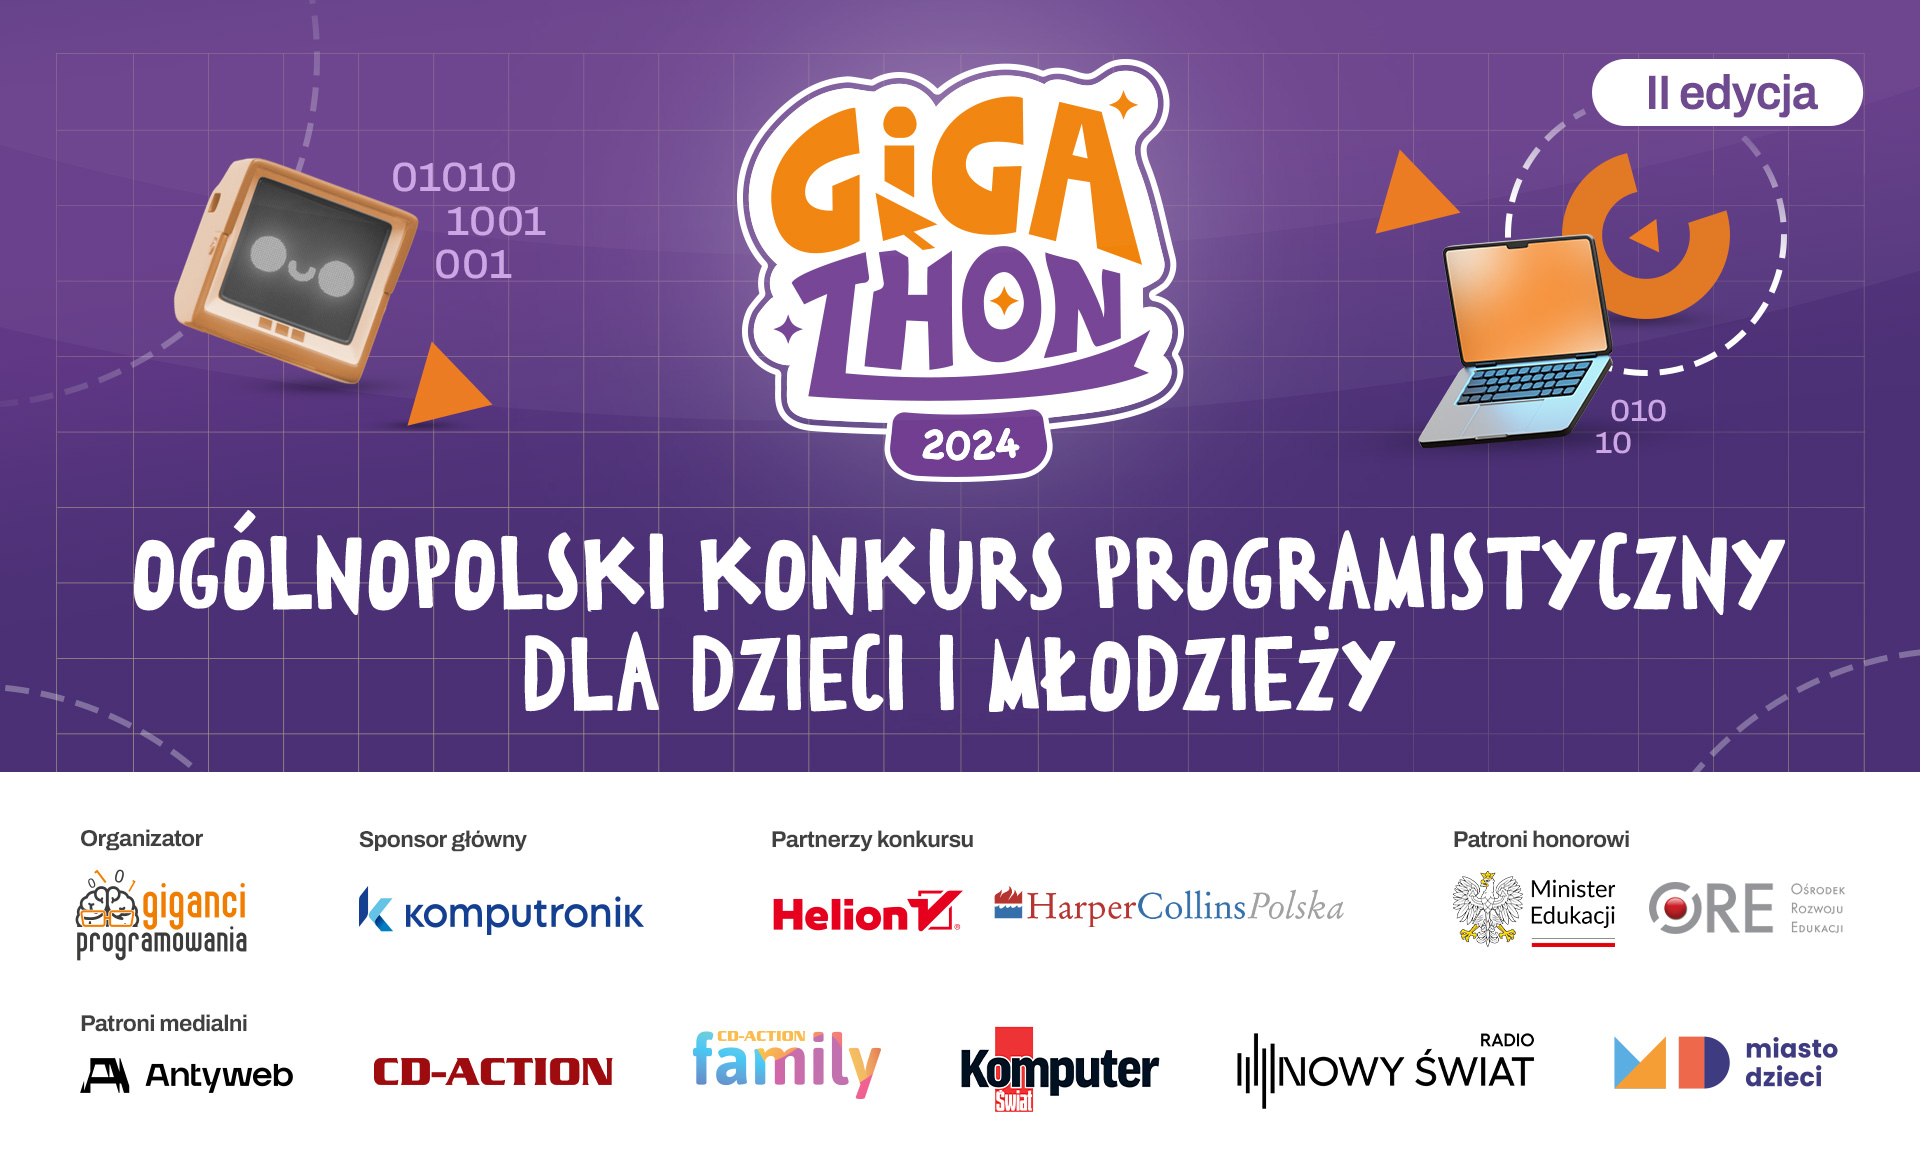 Gigathon Ogólnopolski konkurs dla dzieci i młodzieży